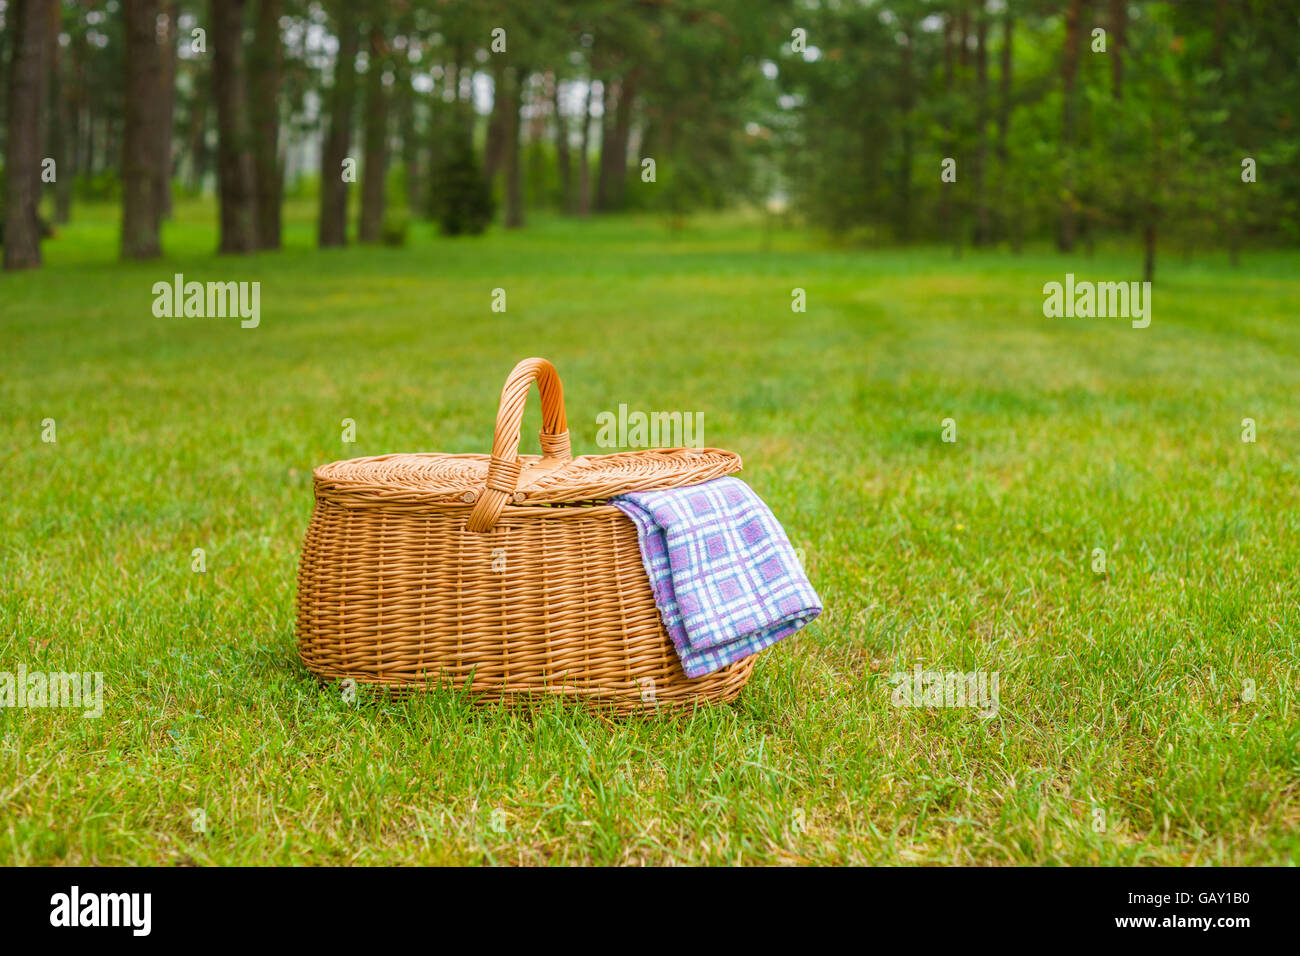 Canasta de picnic con azul blanco accidentada servilleta en la hierba. Parque de césped de verano en el fondo Foto de stock